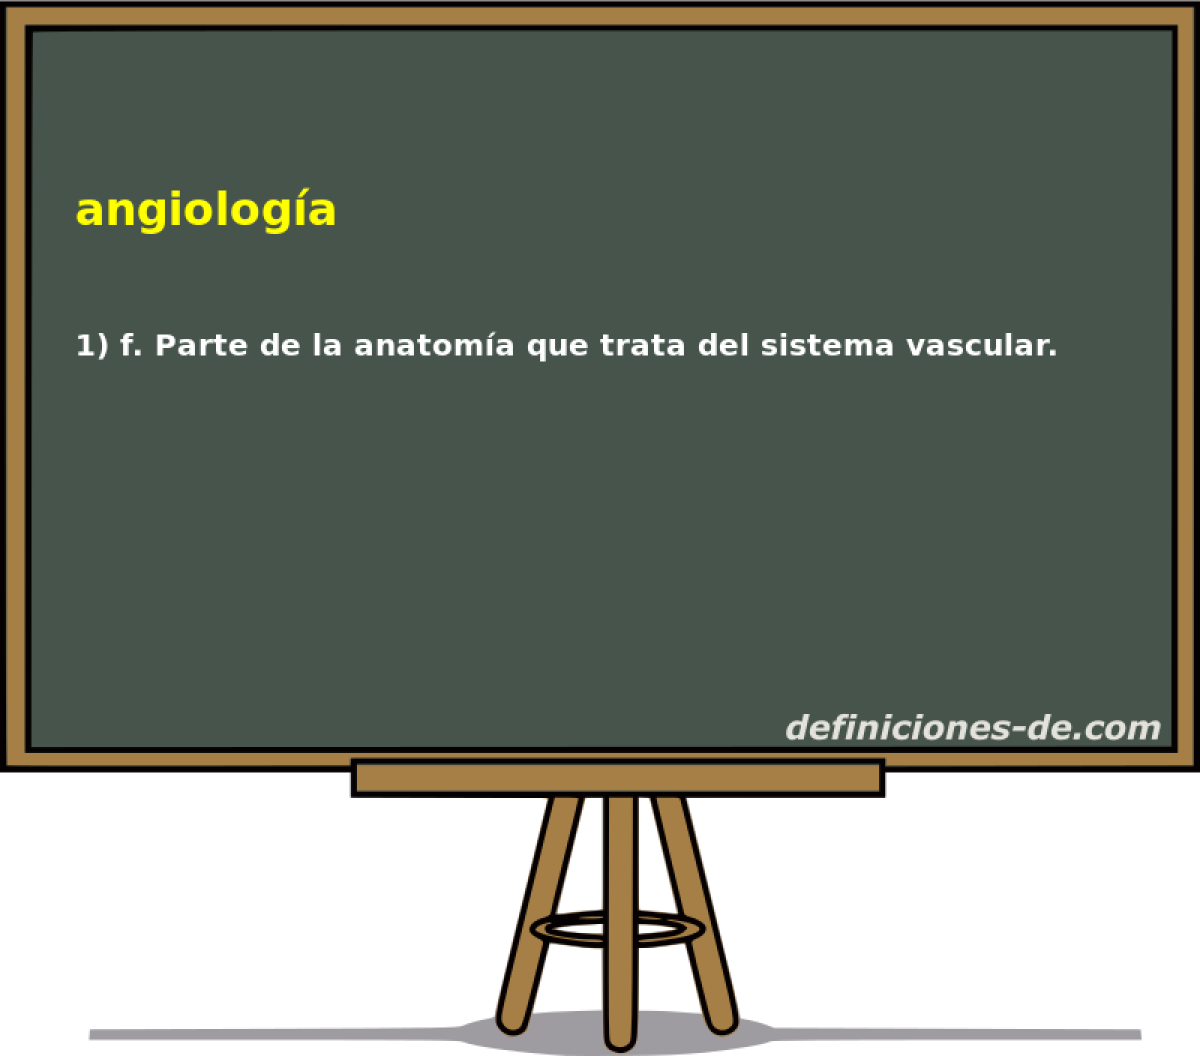 angiologa 